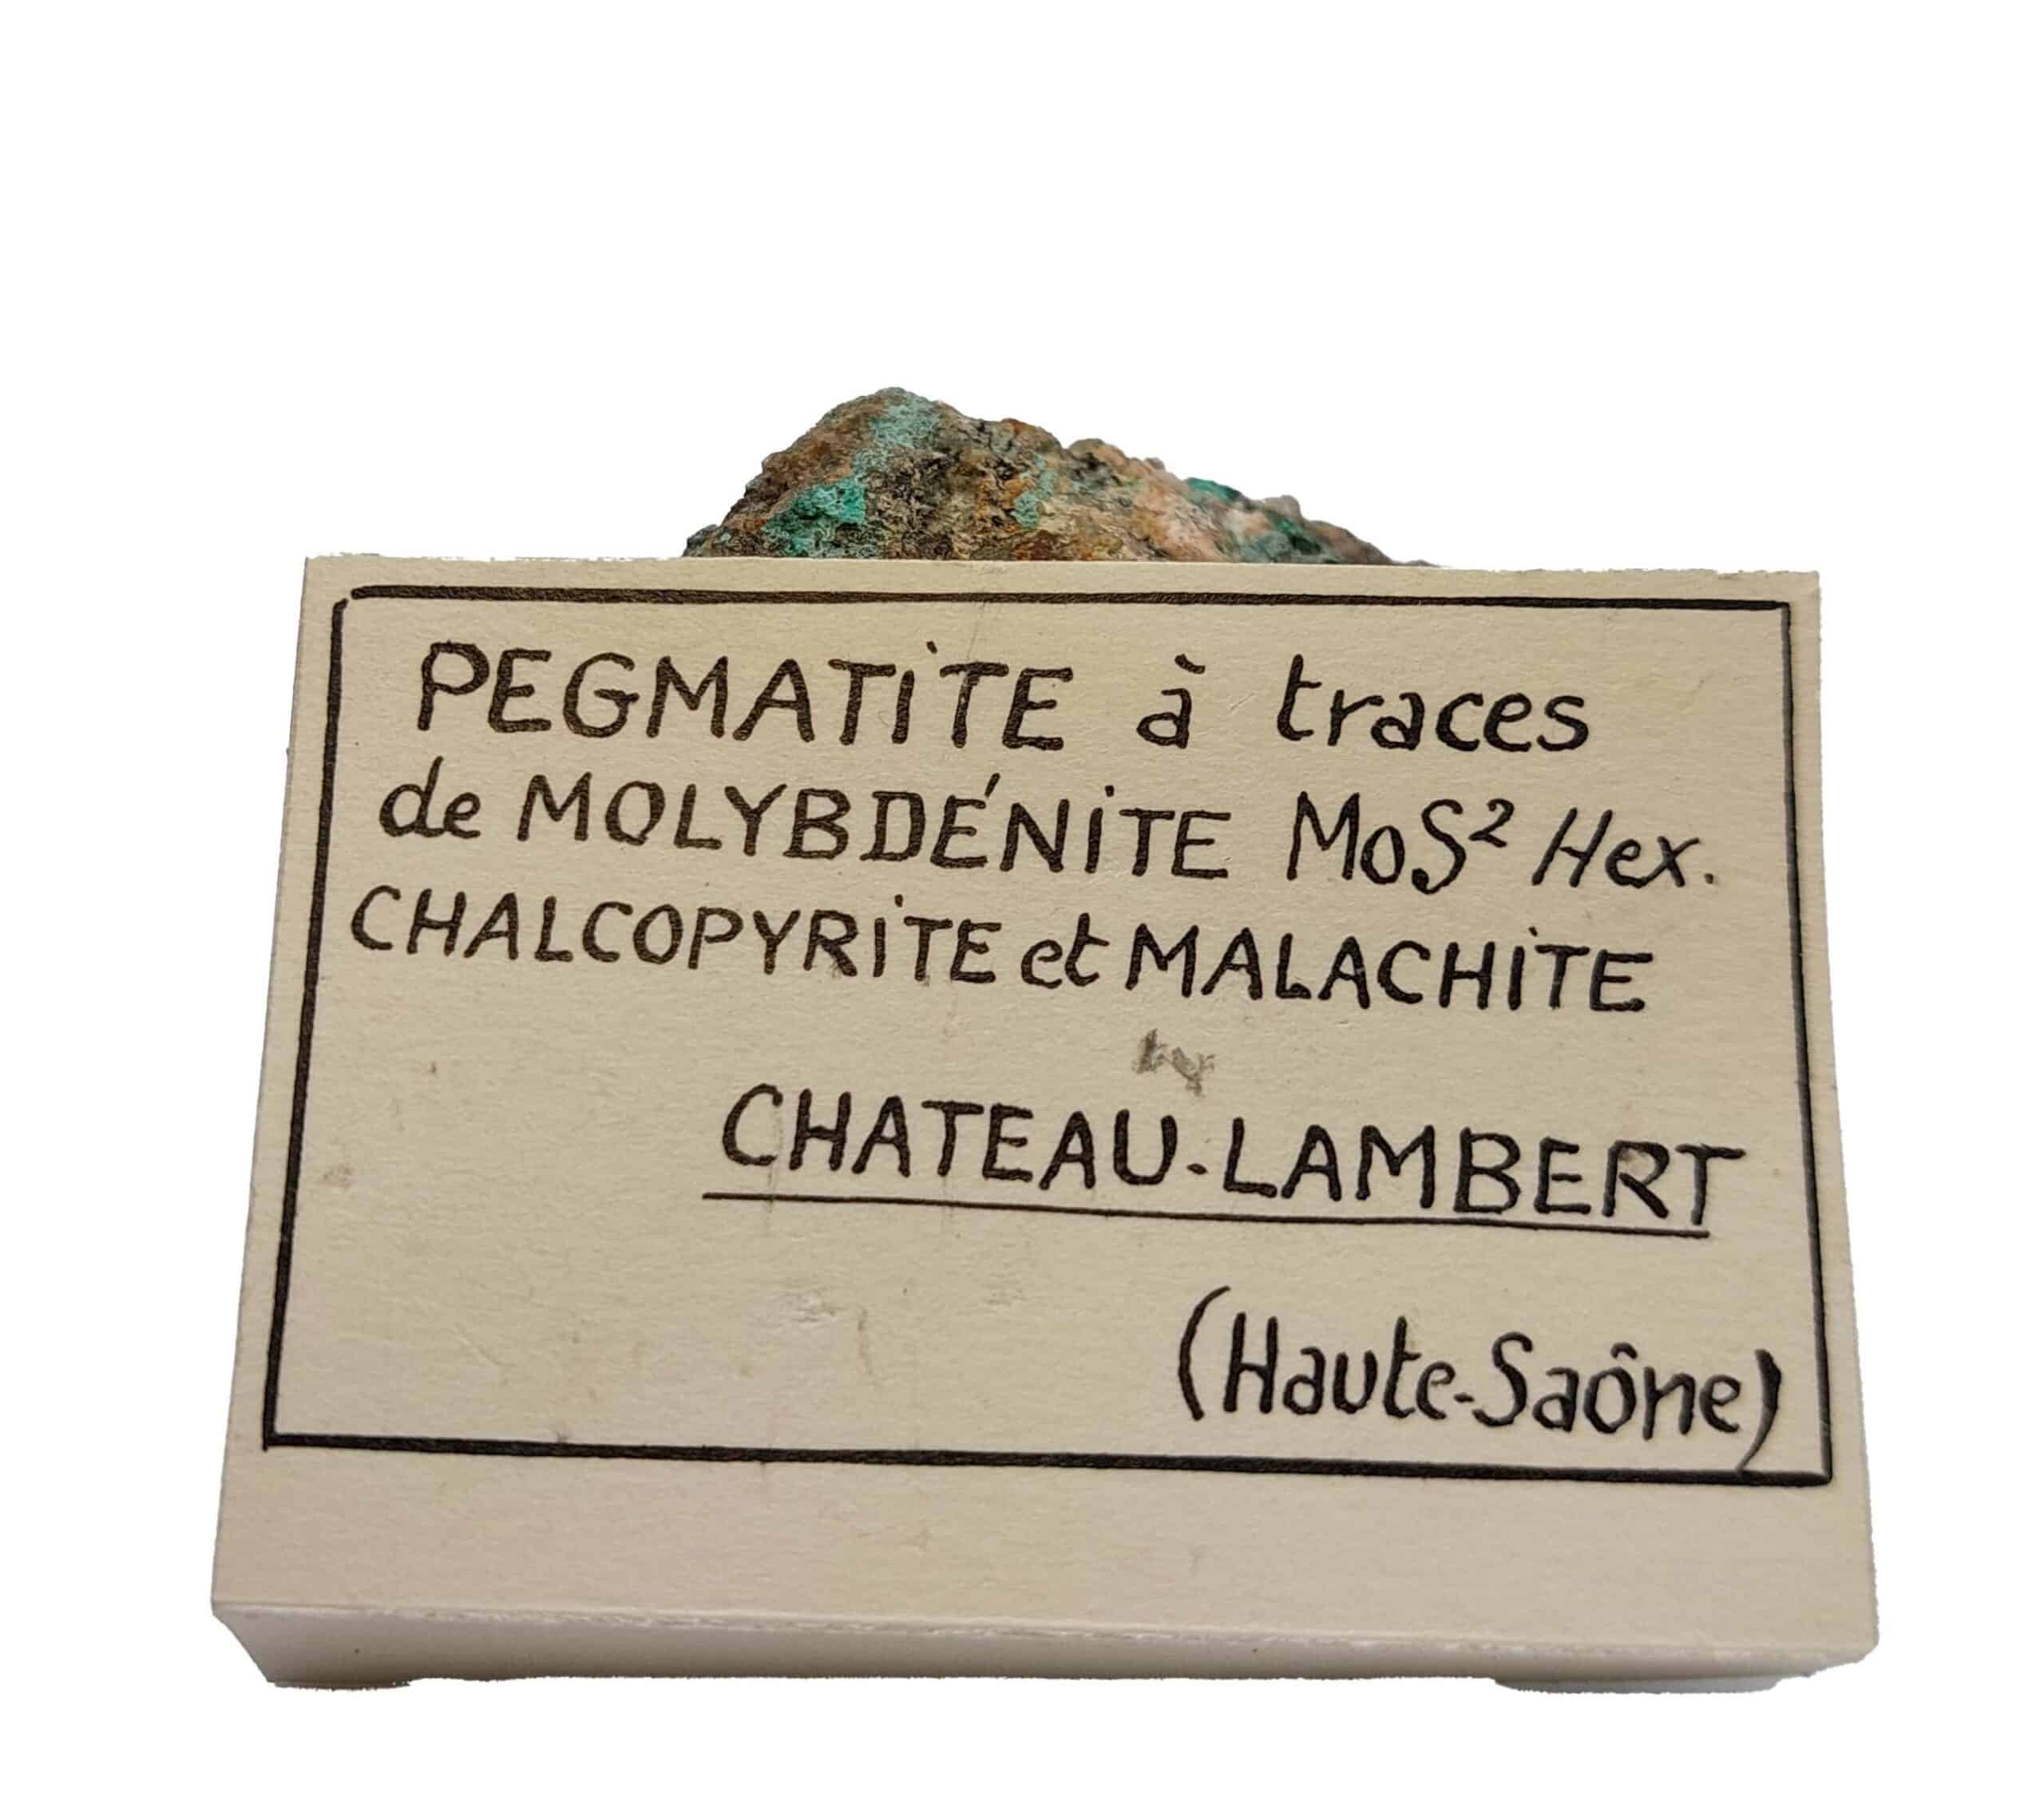 Molybdénite, Chalcopyrite et Malachite, Chateau-Lambert, Haute-Saône.